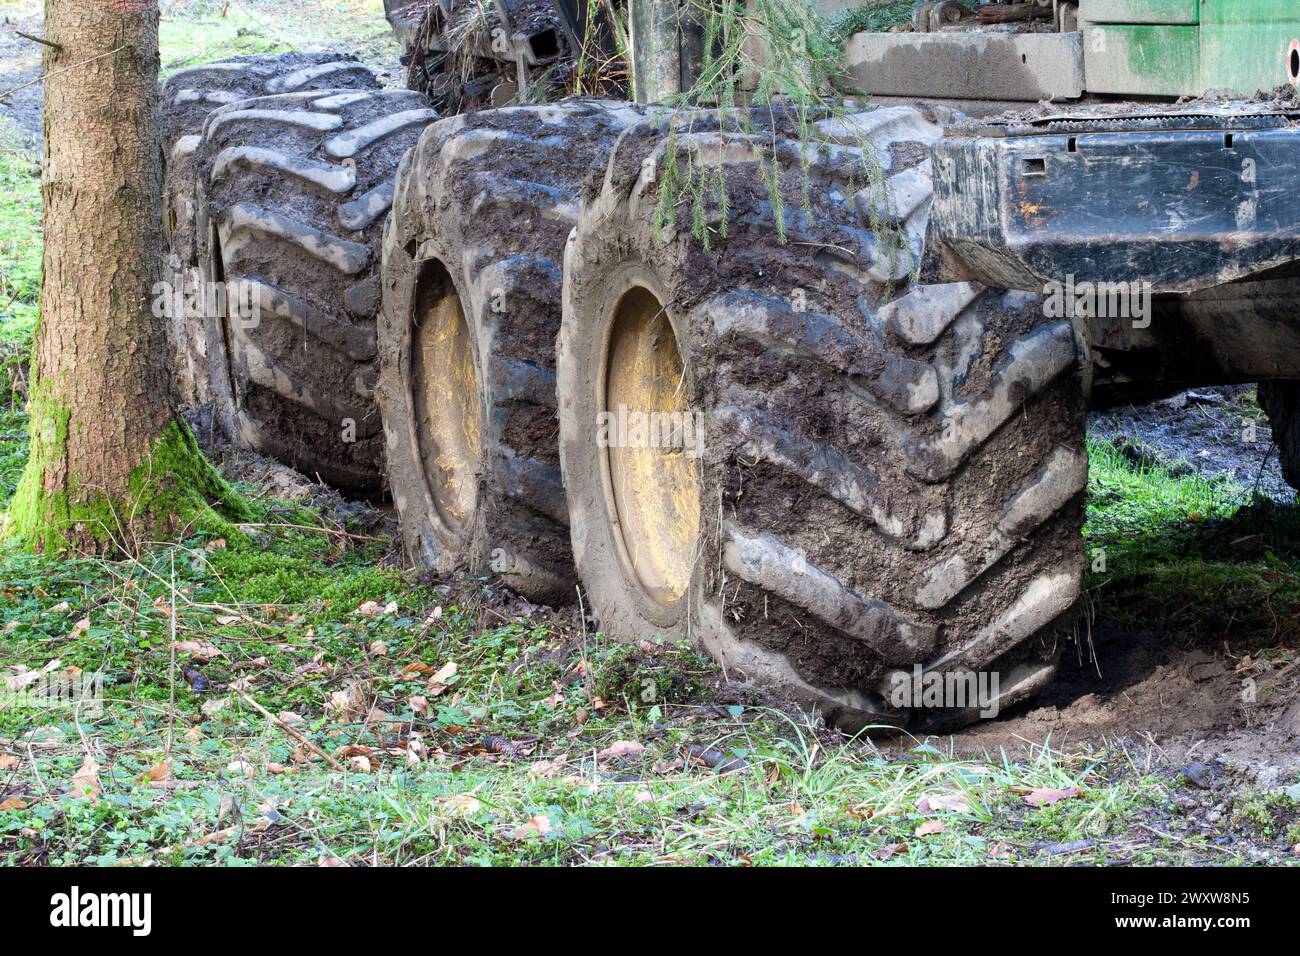 Quatre pneus Timberjack massifs, profondément encastrés dans le sol forestier, témoignent du puissant mouvement de la machine forestière. Banque D'Images